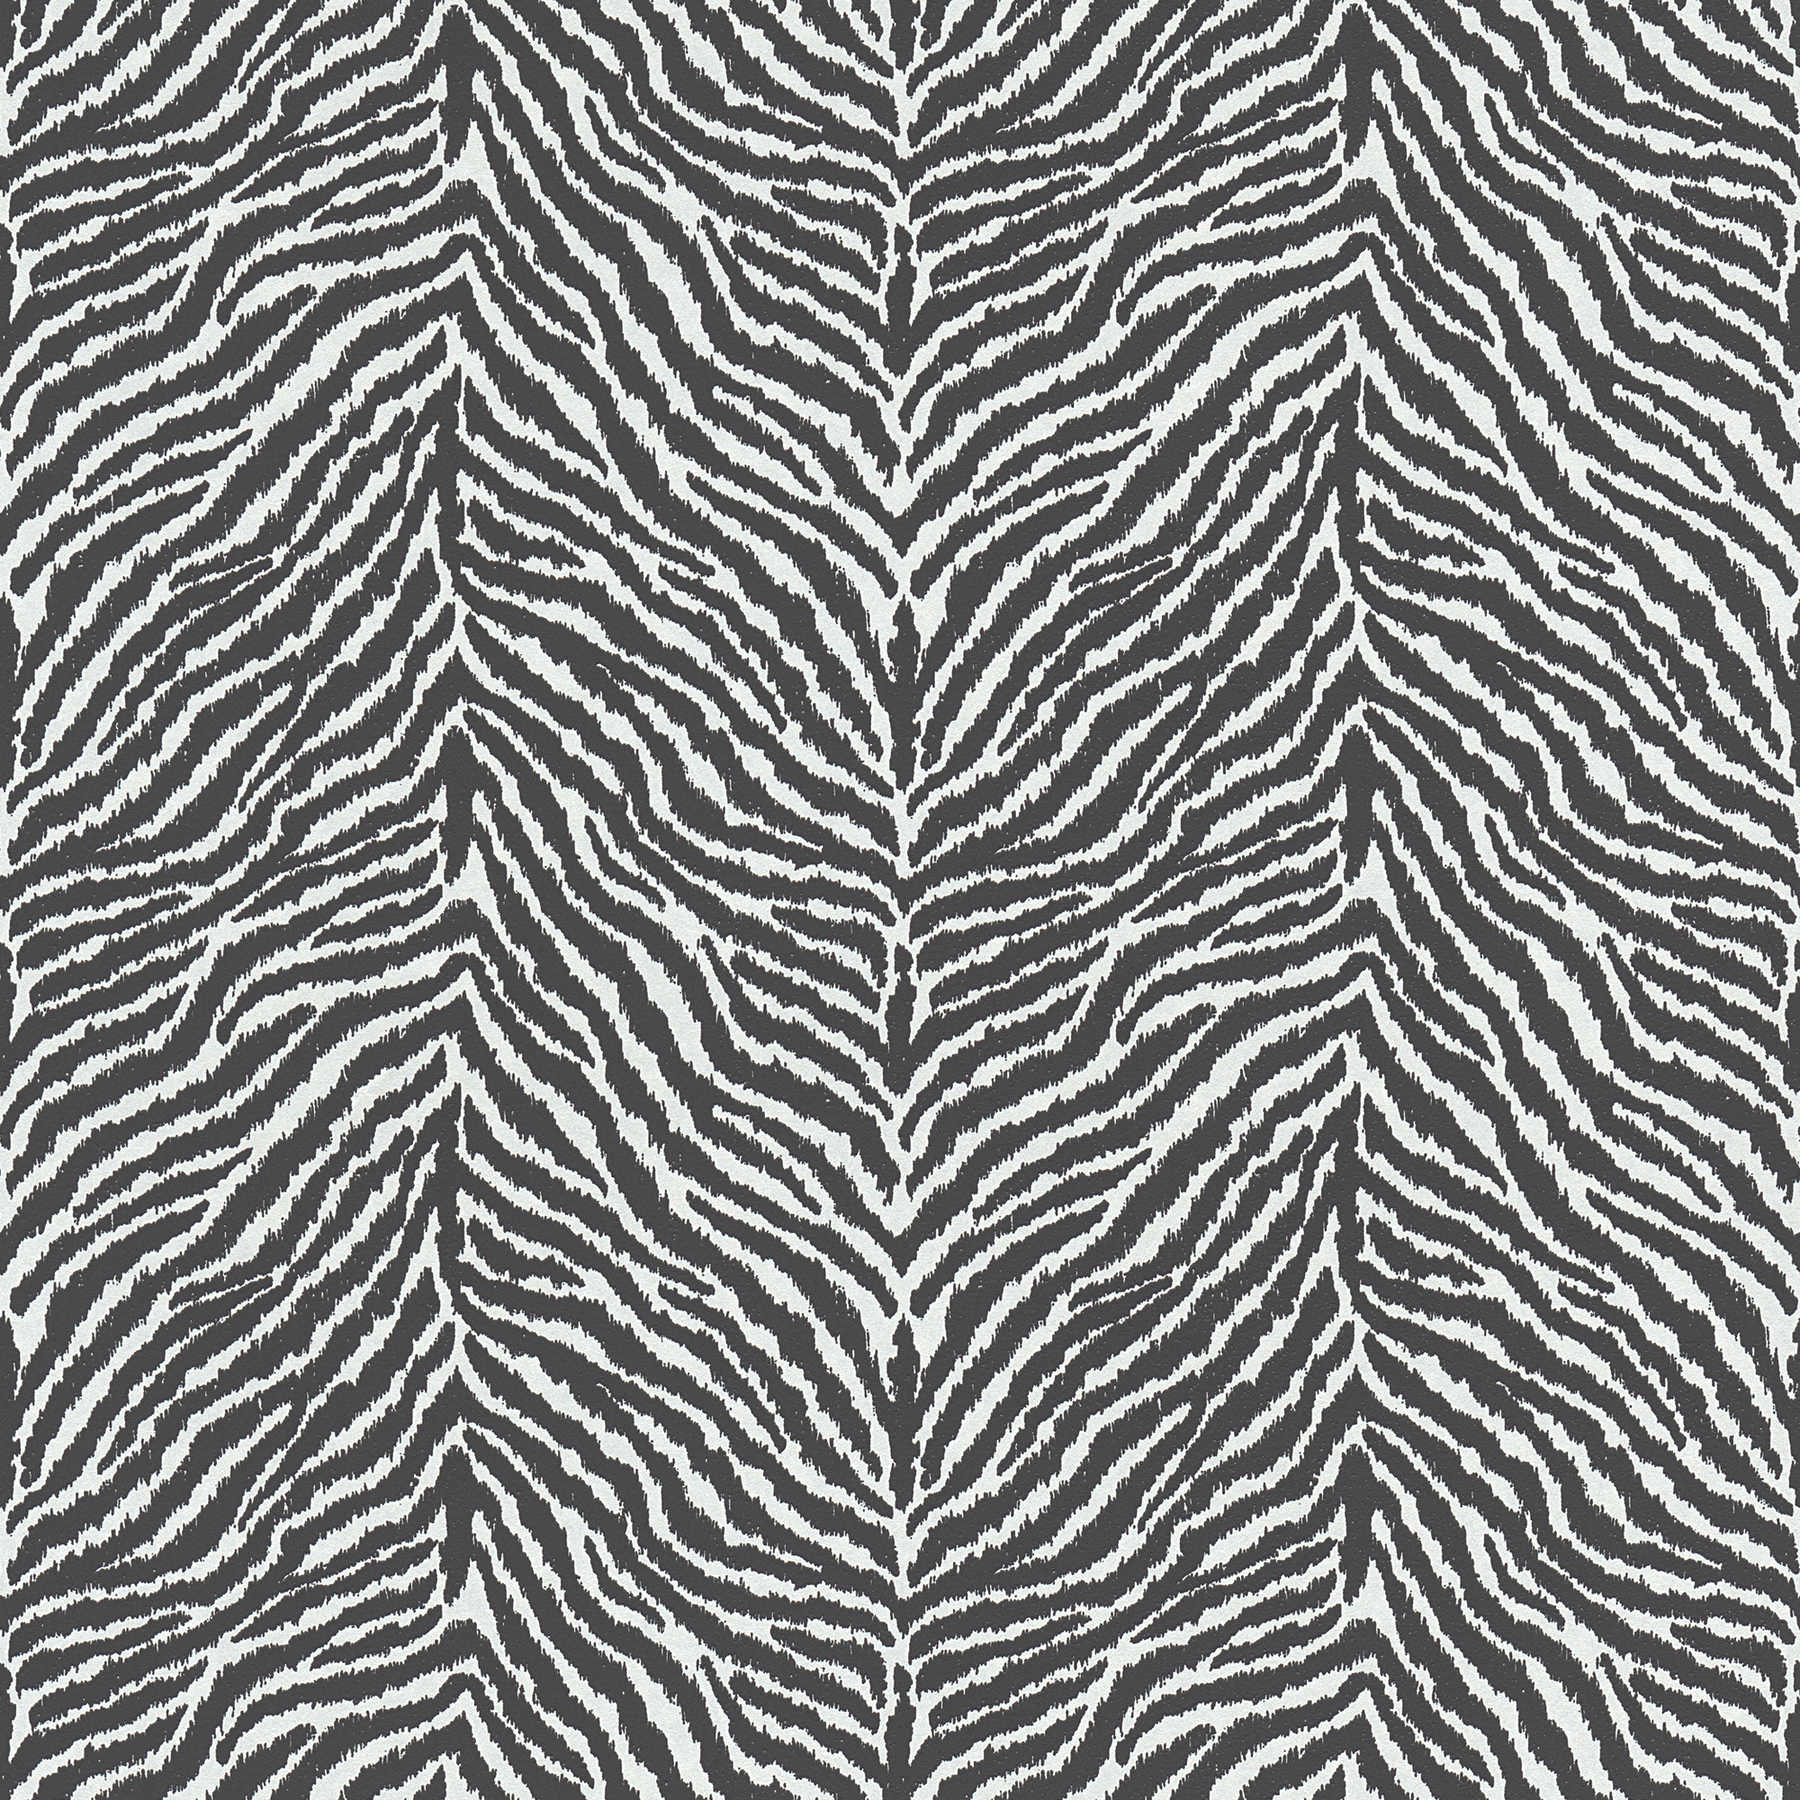         Animal print non-woven wallpaper zebra pattern - black, white
    